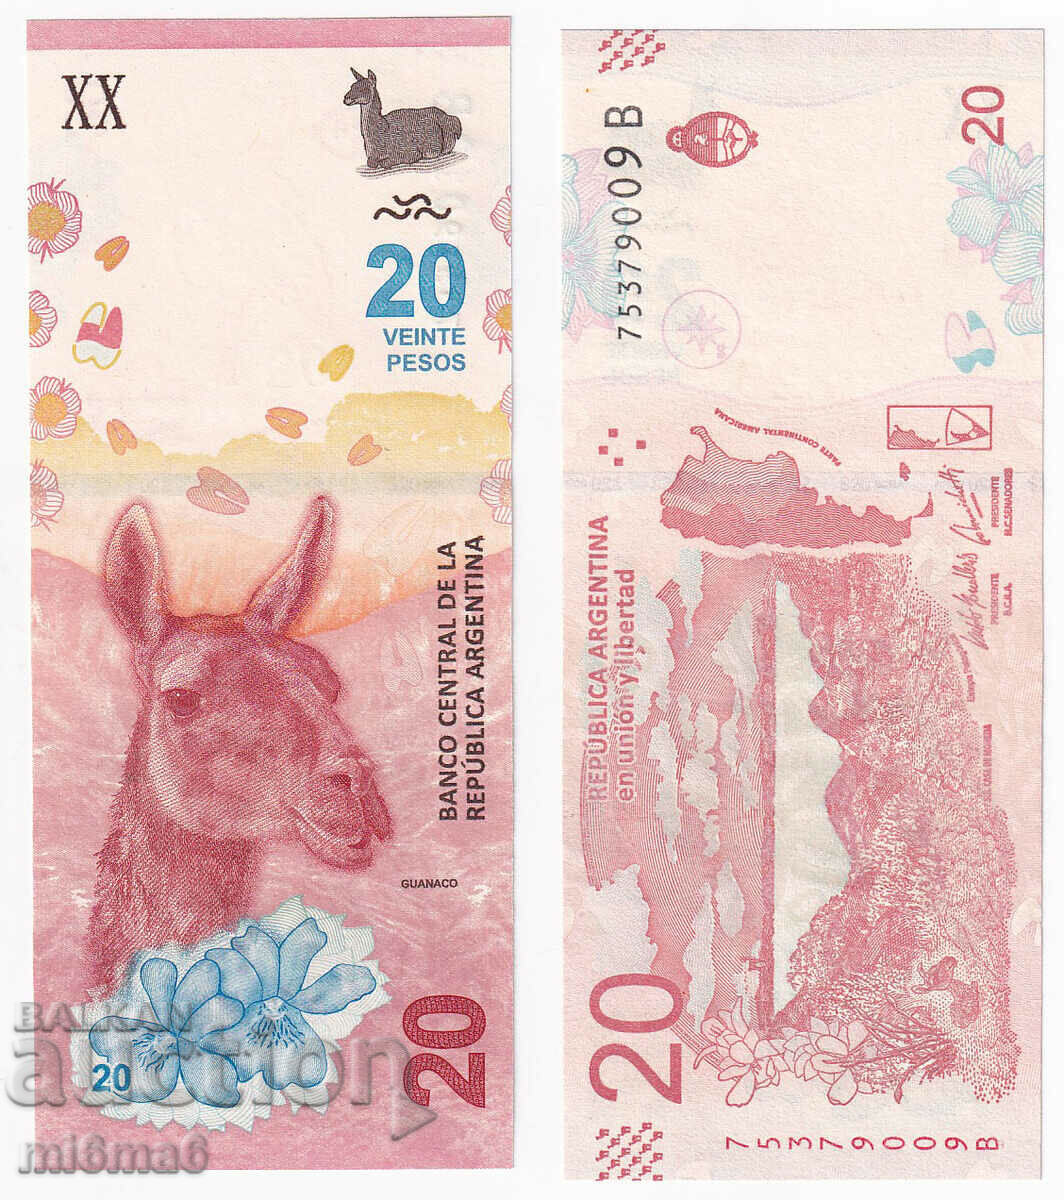 MI6MA6 - Argentina 20 pesos